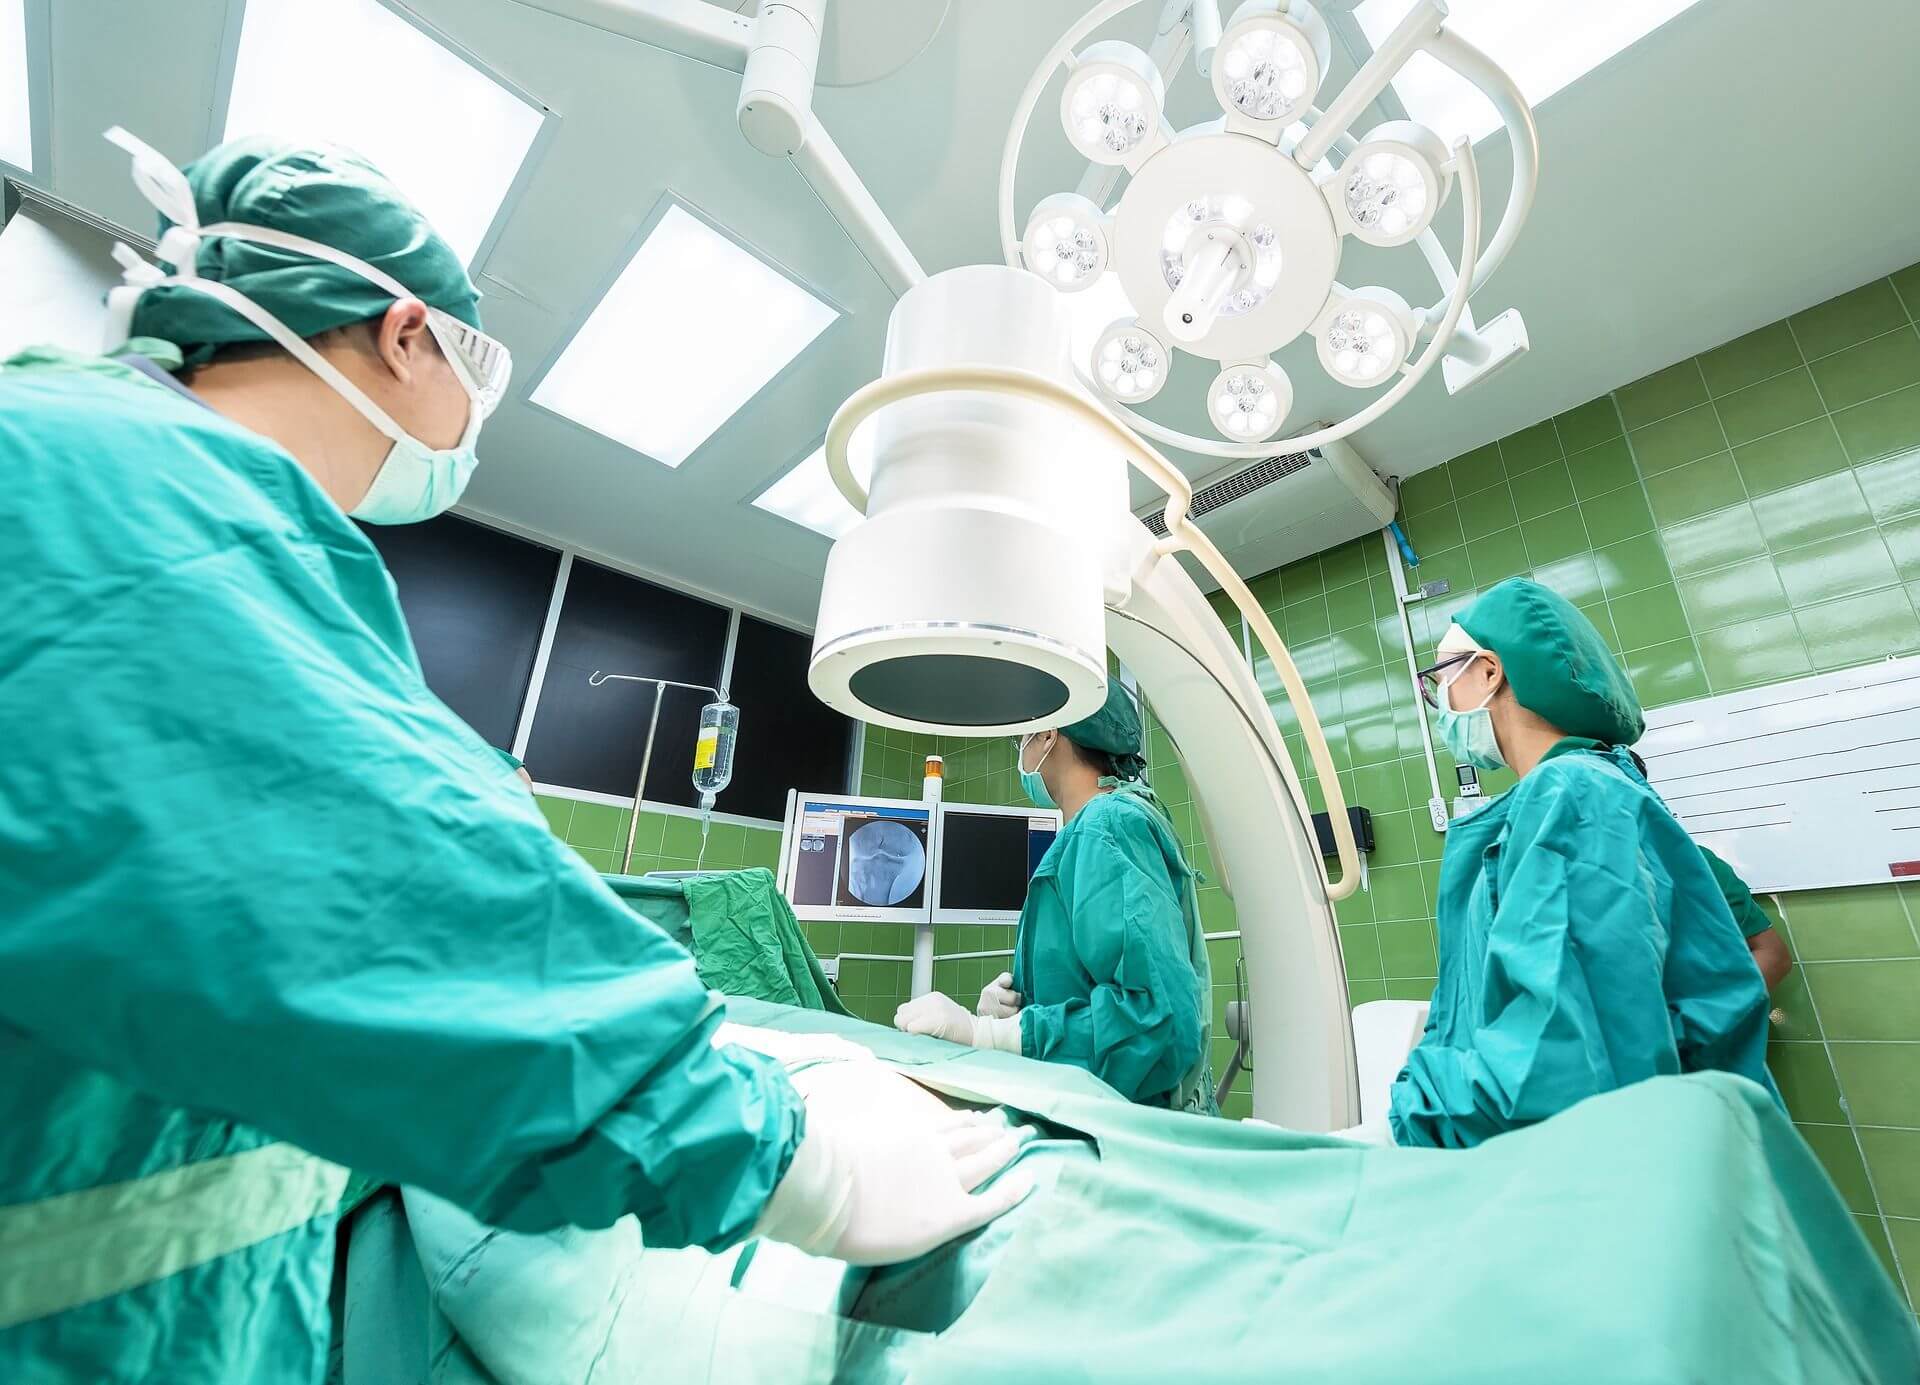 Robot provedl poprvé složitou laparoskopickou operaci bez asistence člověka